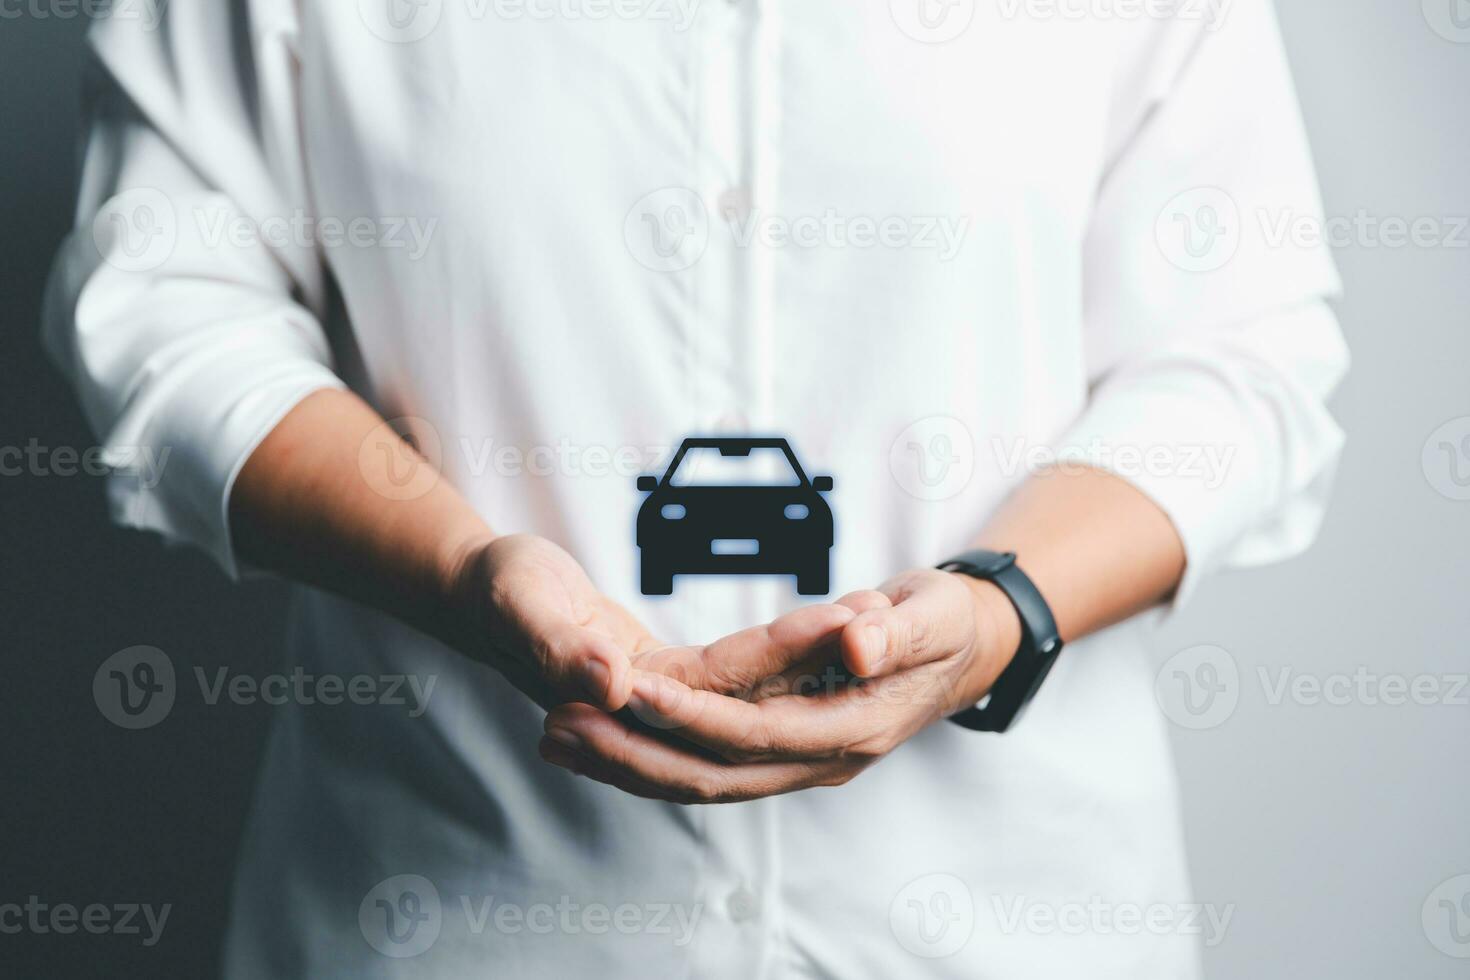 företag kvinnas hand skyddande svart ikon bil på skrivbord. planera till klara av transport finansiera kostar. begrepp av bil försäkring företag, sparande köpa - försäljning med beskatta och lån för ny bil. foto